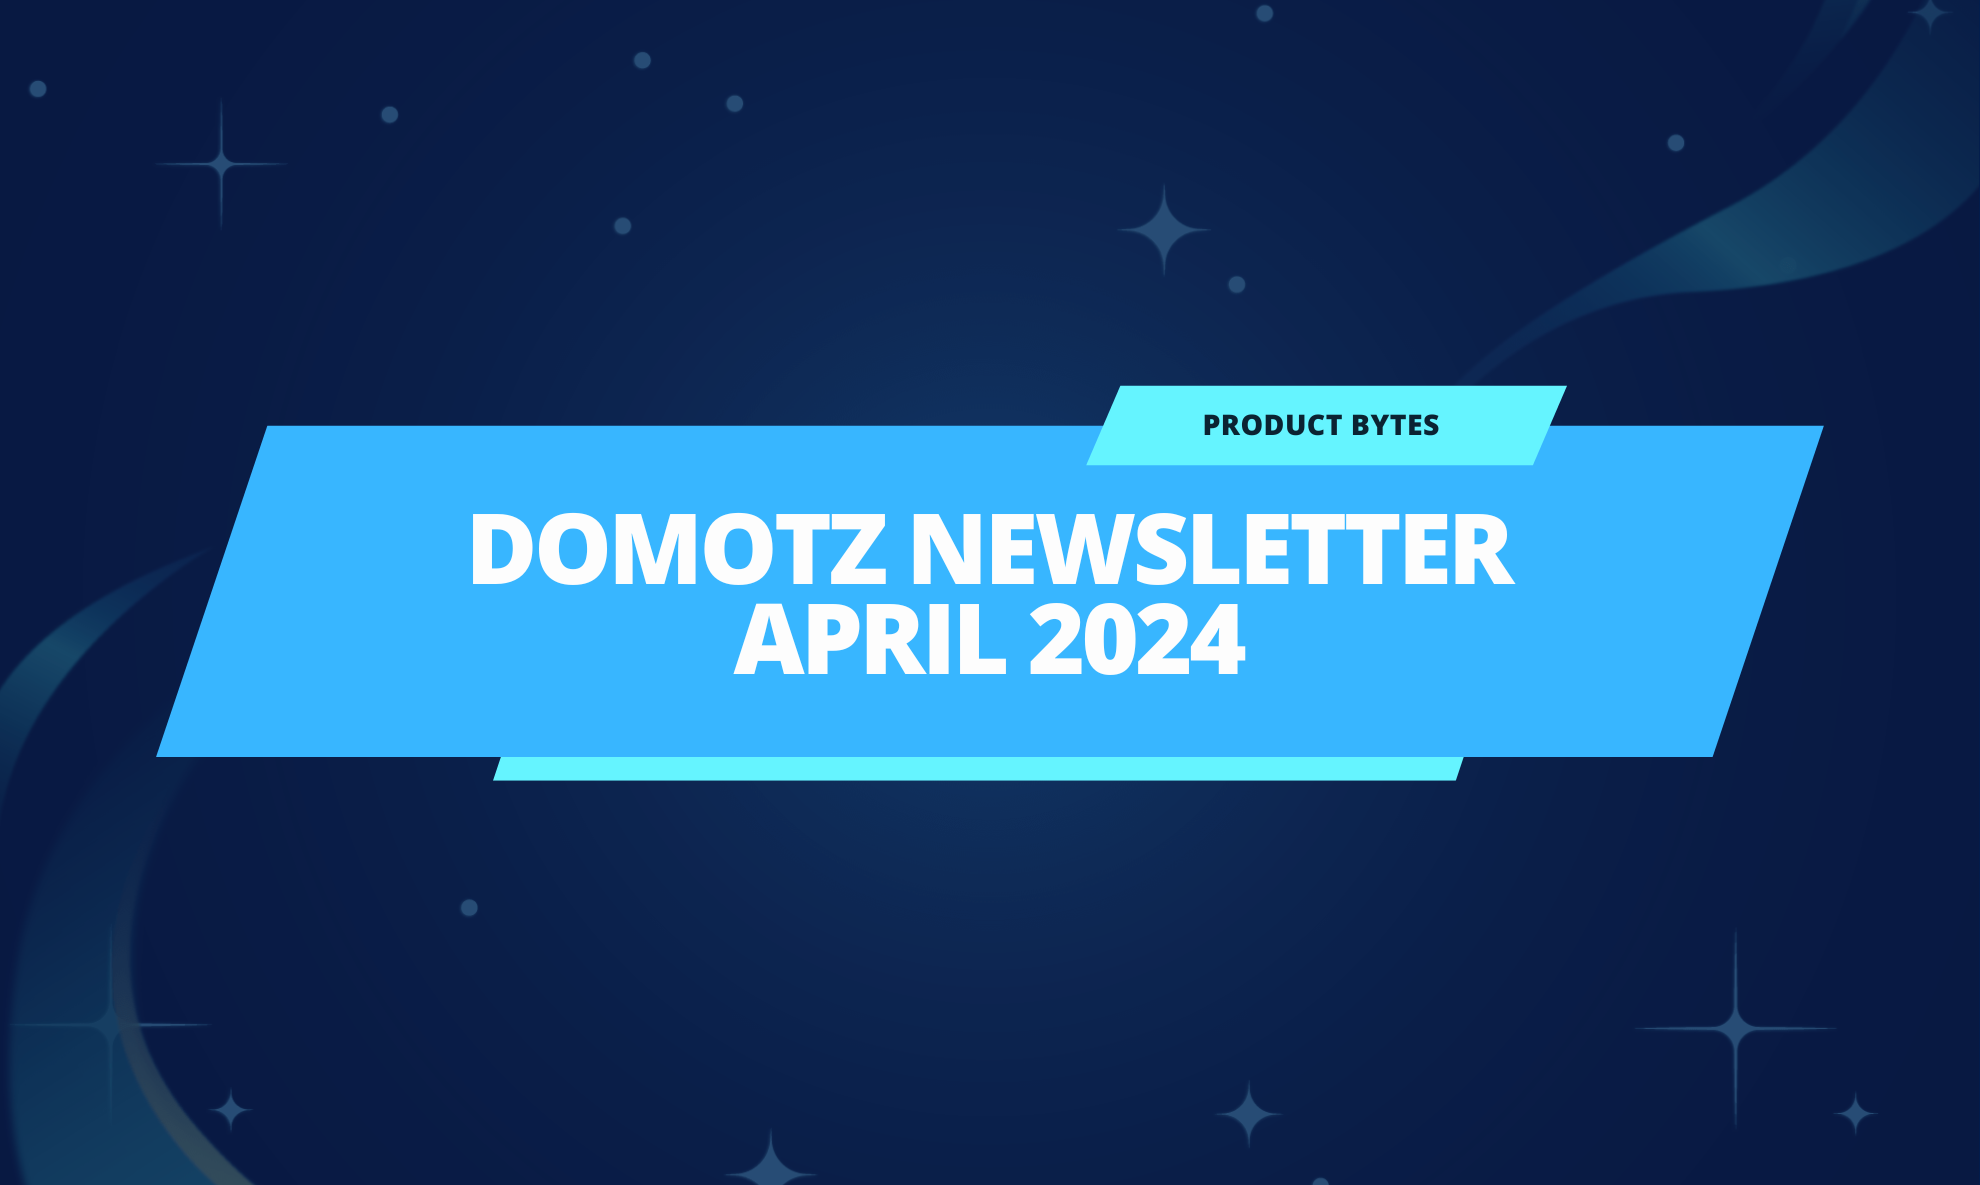 domotz newsletter